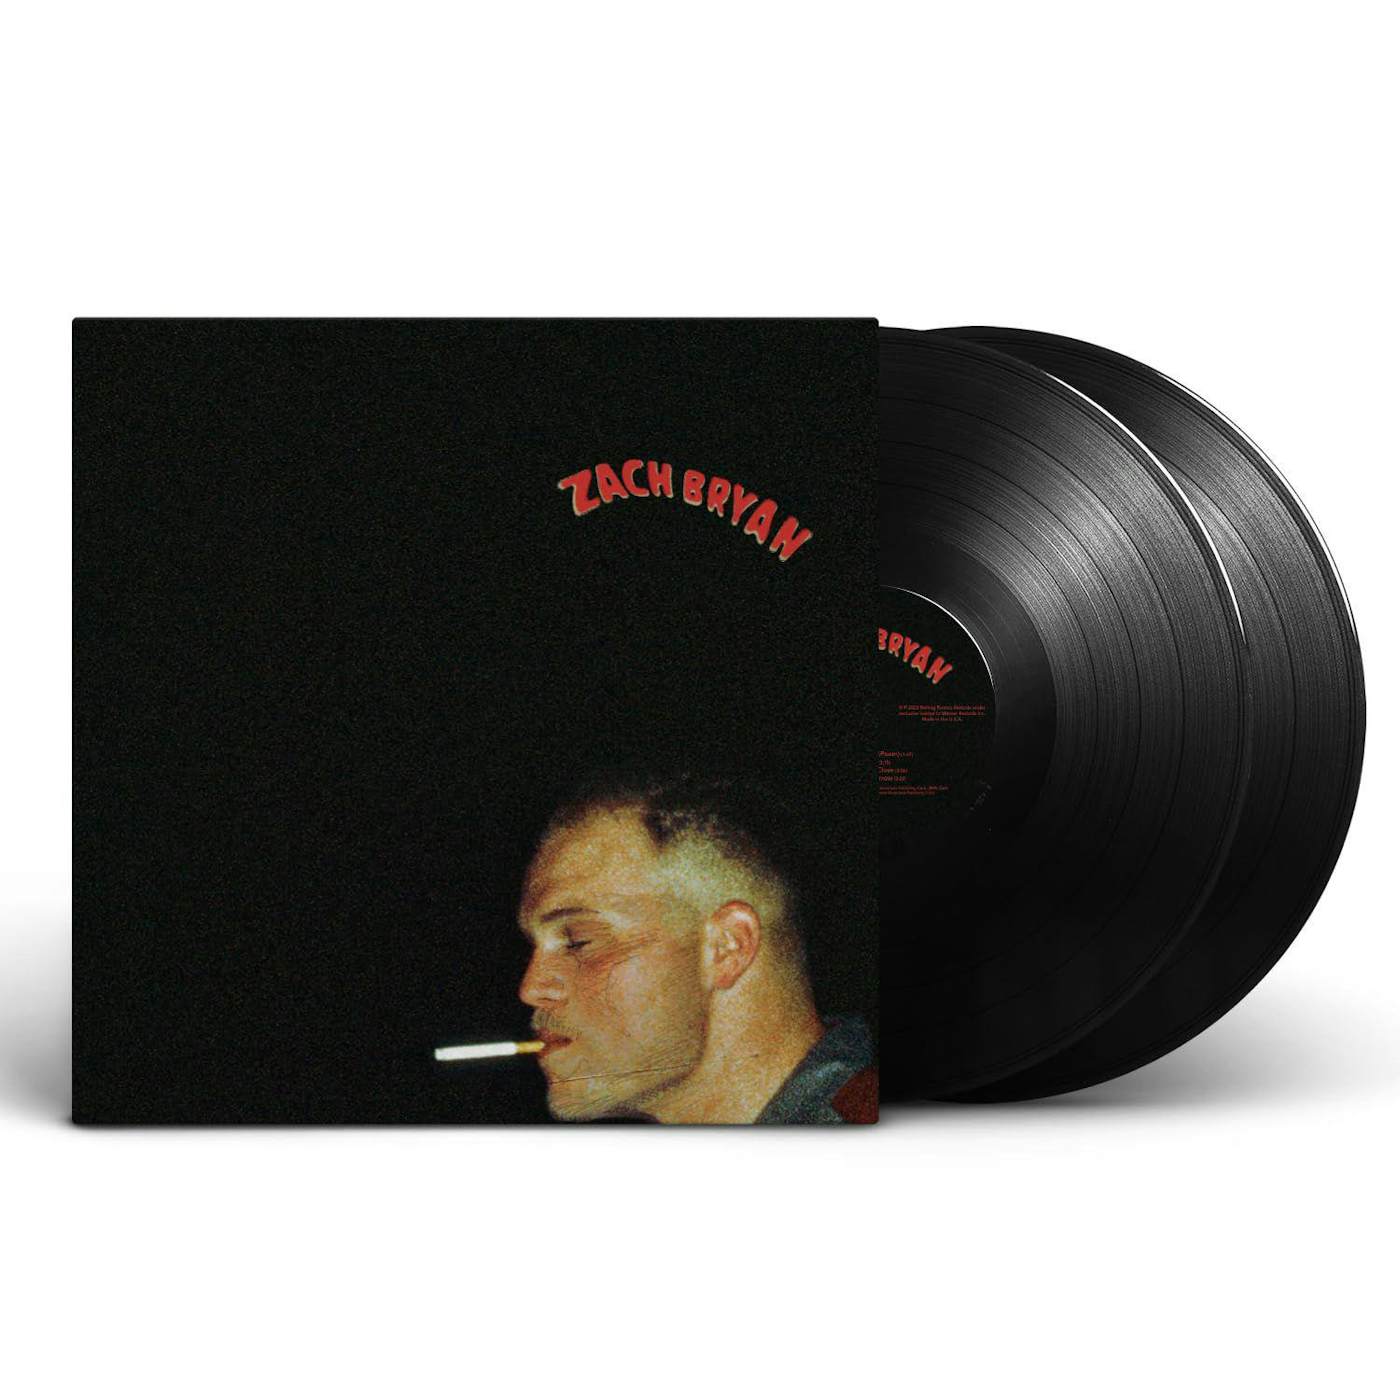  Zach Bryan (2LP) (Explicit Content) Vinyl Record